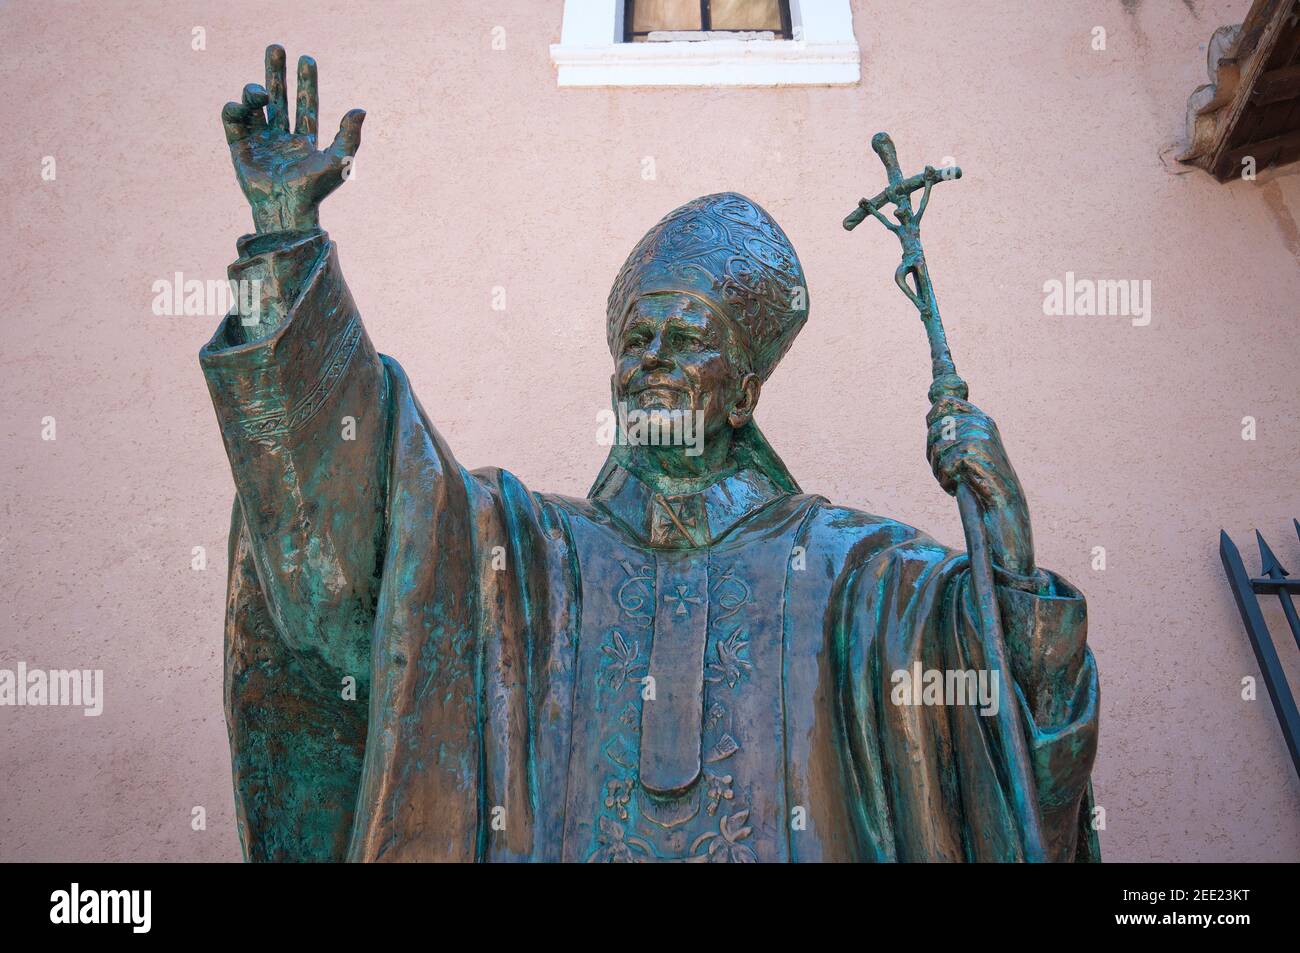 Statue de bronze du Pape Giovanni Paolo II à Santuario della Mentorella (Sanctuaire de Mentorella) près de Guadagnolo, montagnes de Prenestini, Latium, Italie Banque D'Images